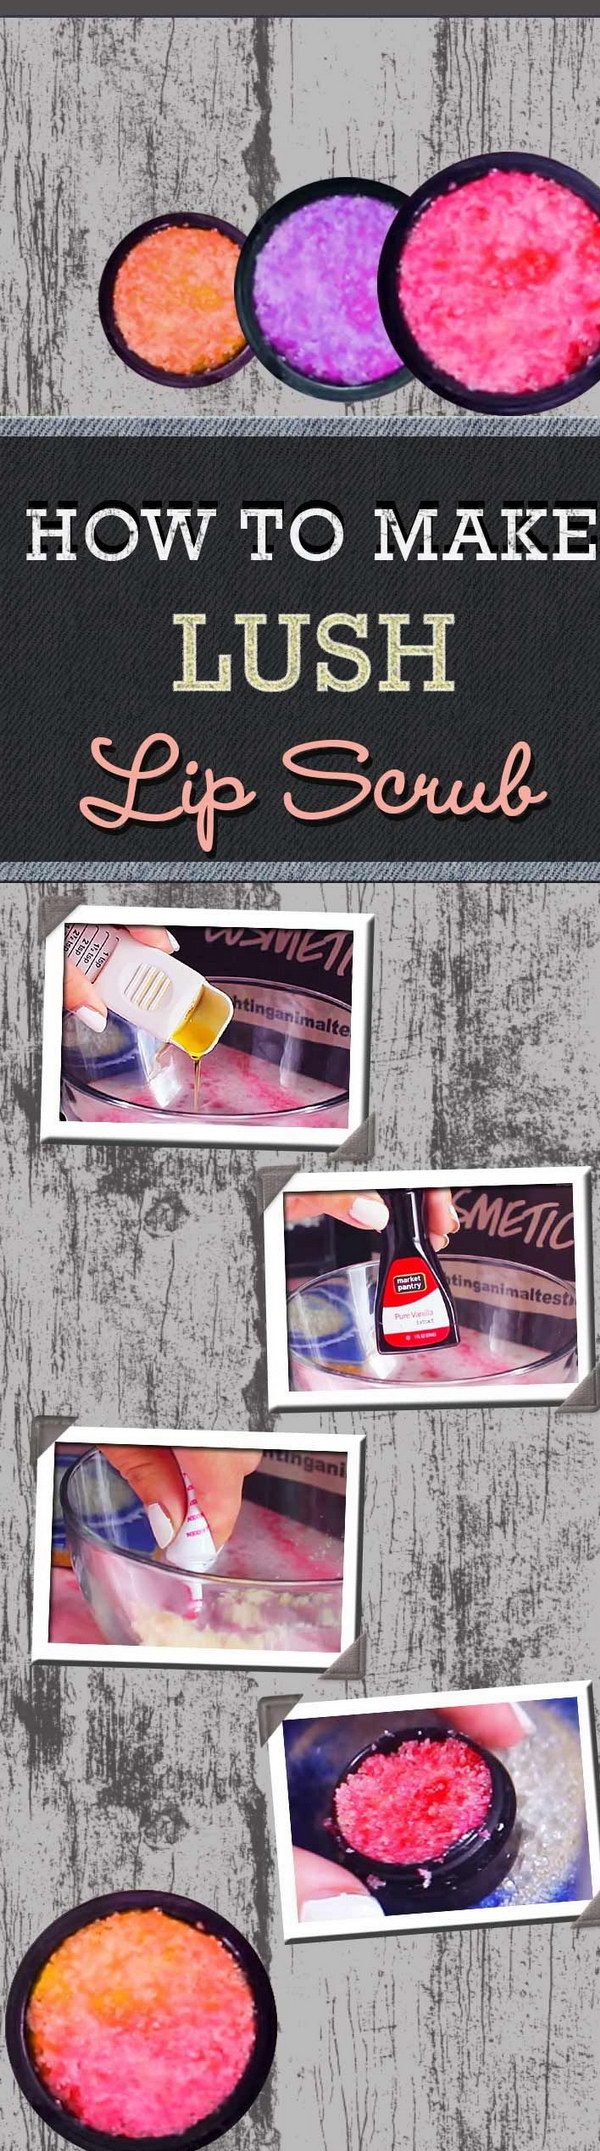 Homemade Lush Lip Scrub. 